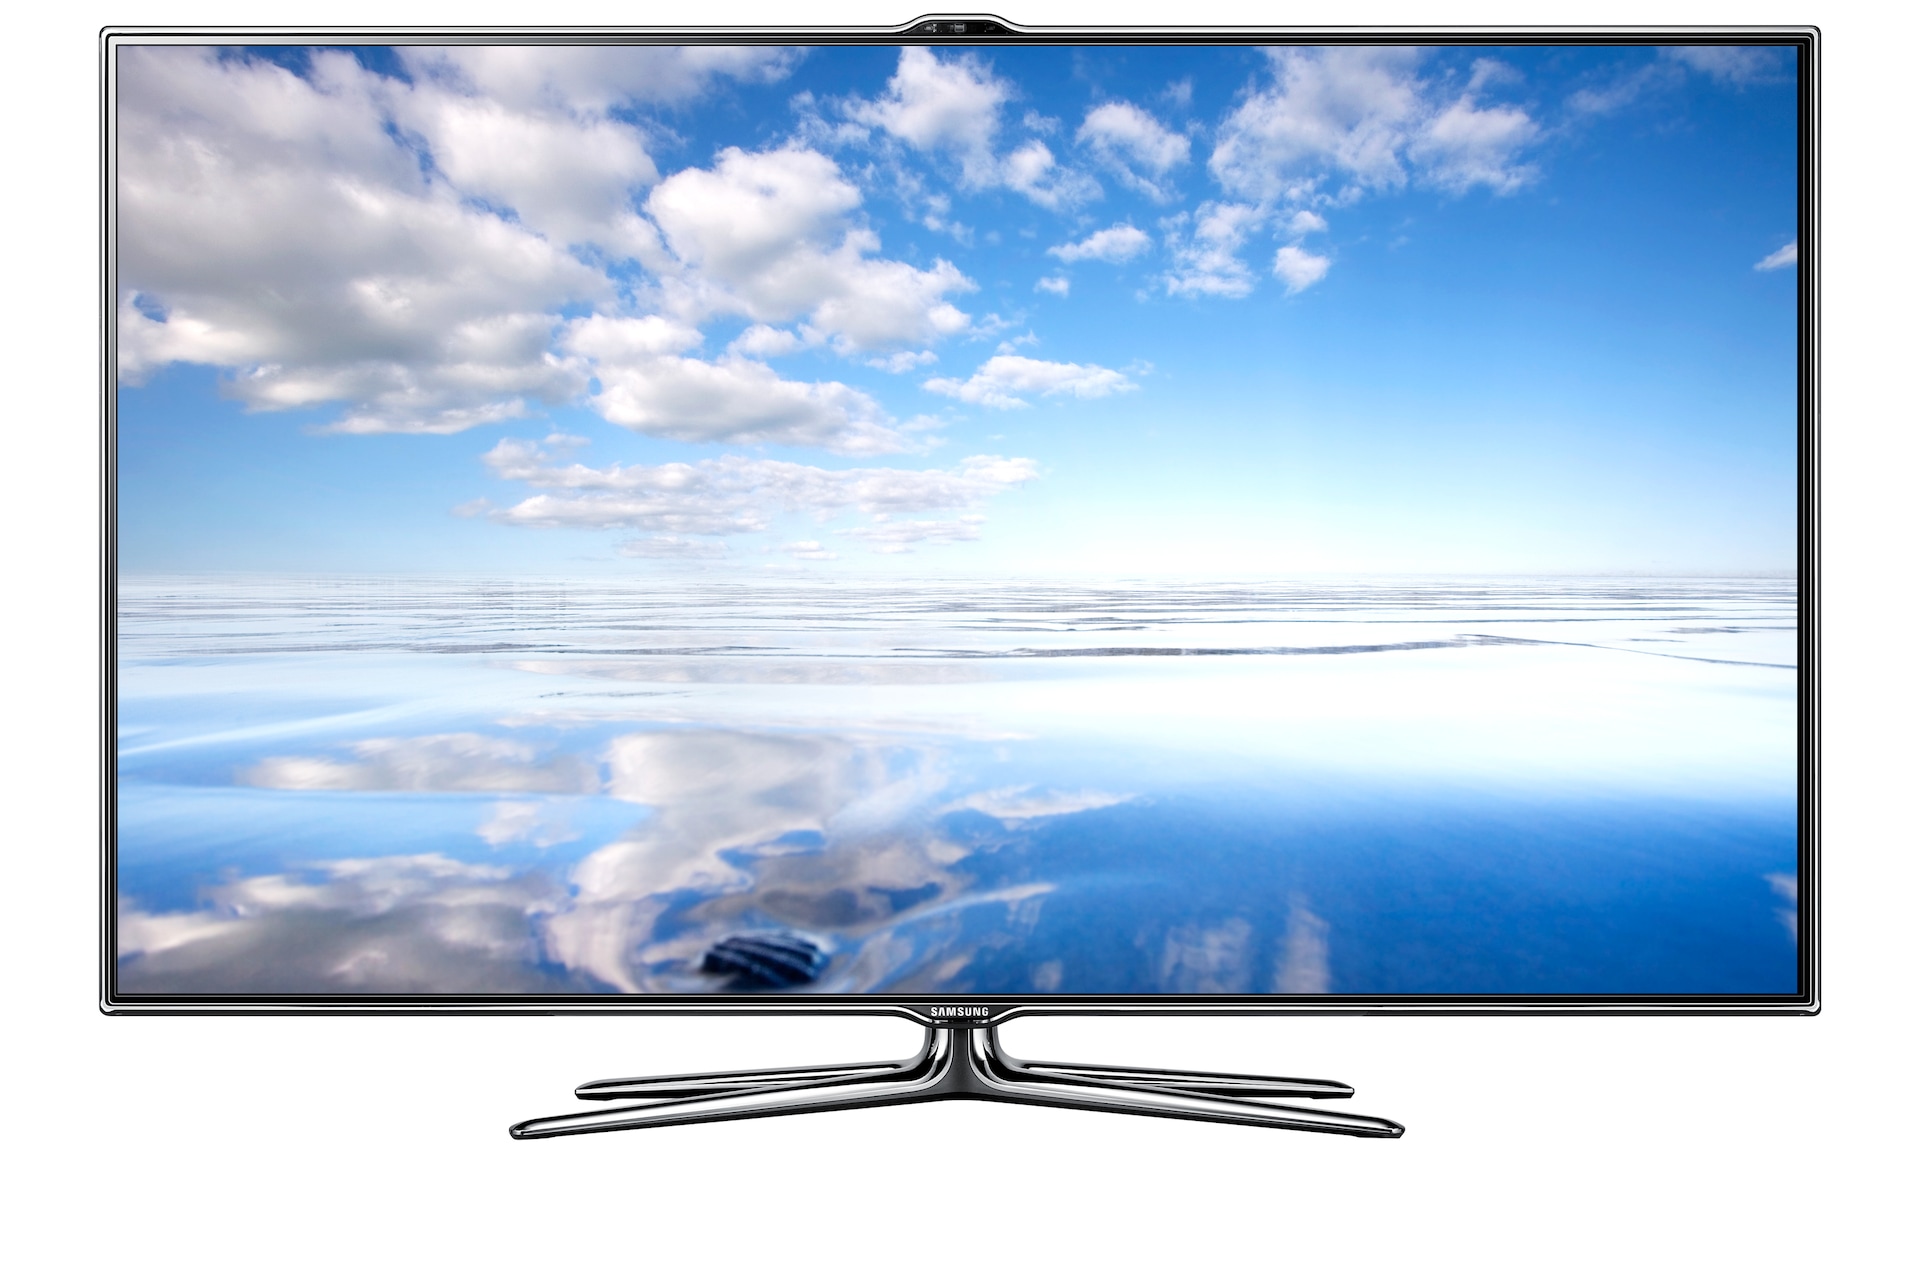 [2012] UA40ES7500R Smart 40-Inch Full HD LED TV | Samsung Gulf3000 x 2000